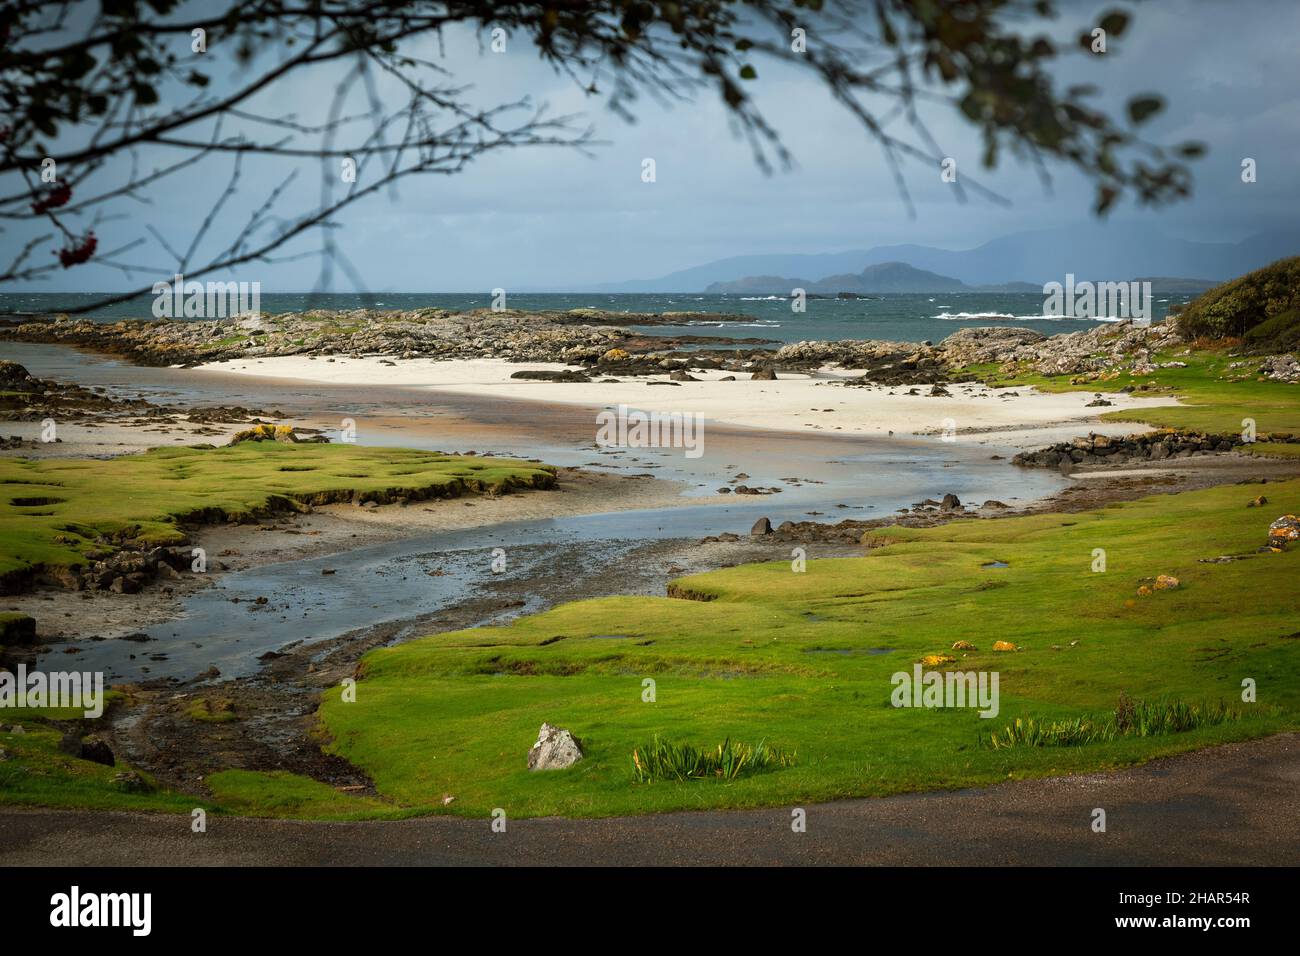 La ensenada y la playa de arenas blancas de Portuairk, el asentamiento más occidental de la tierra firme británica que tiene vistas de las pequeñas islas, Escocia occidental Foto de stock